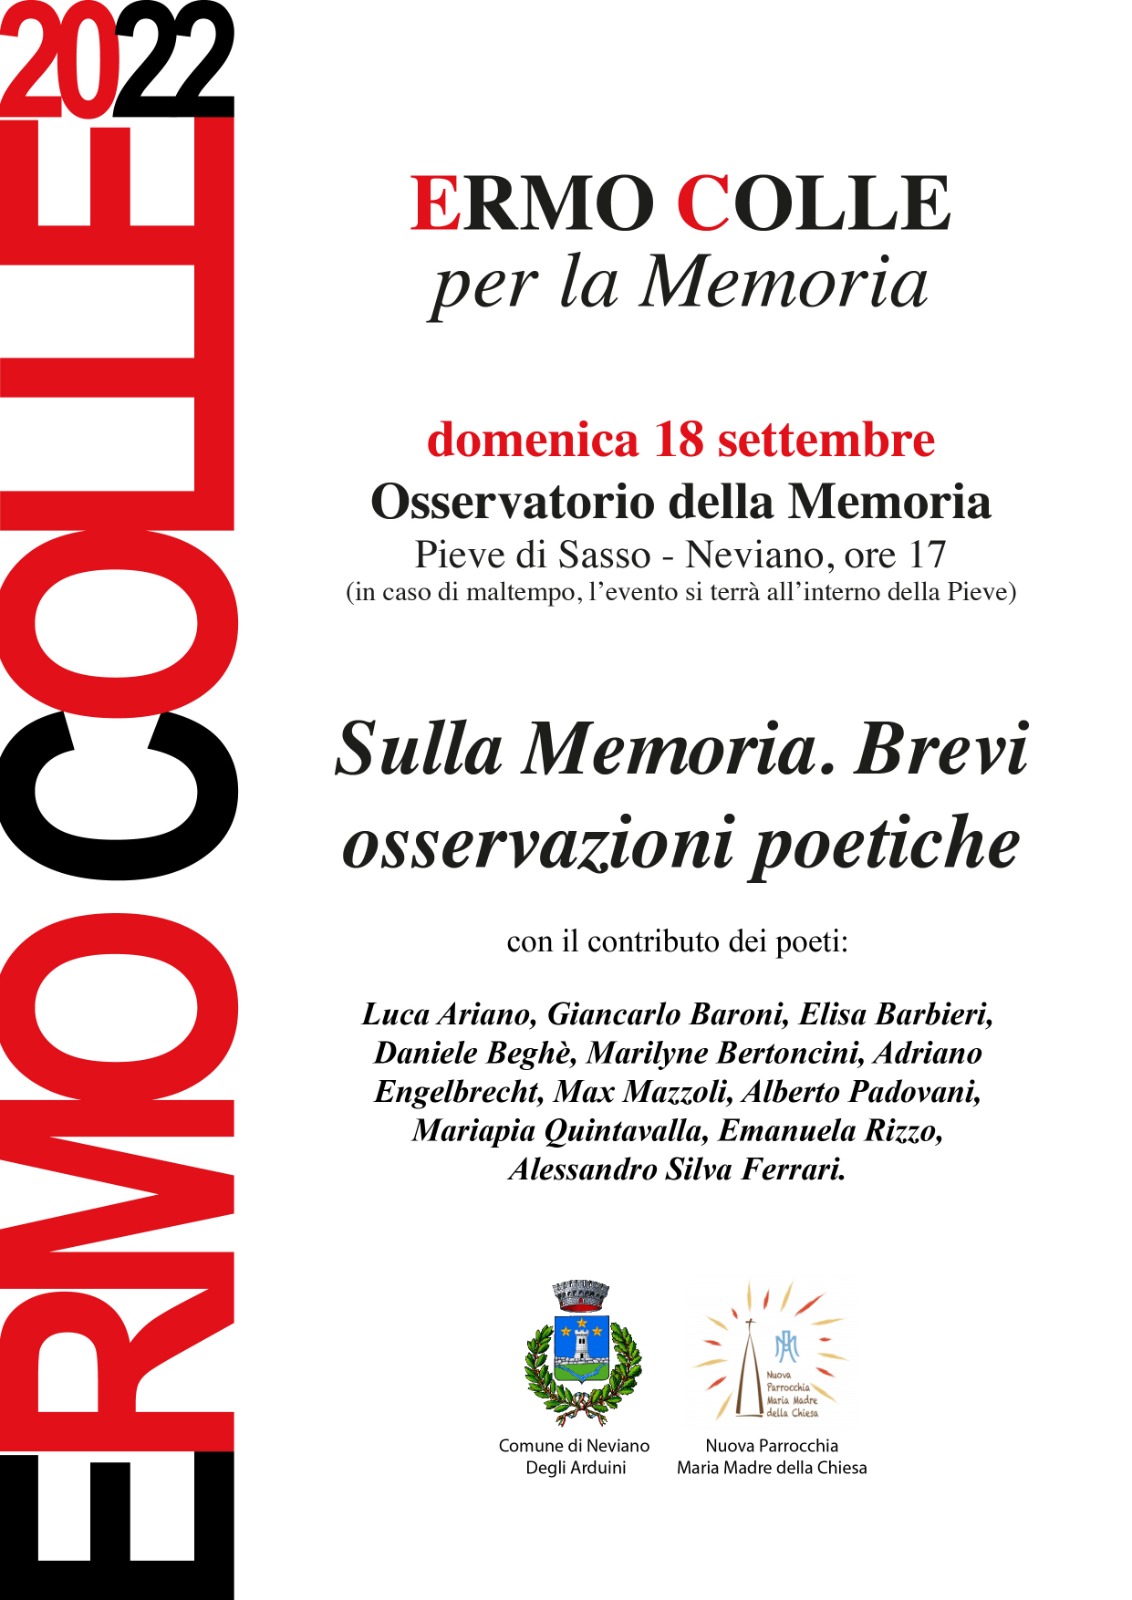 ERMO COLLE per la Memoria – Pieve di Sasso – Neviano, 18 settembre ore 17:00